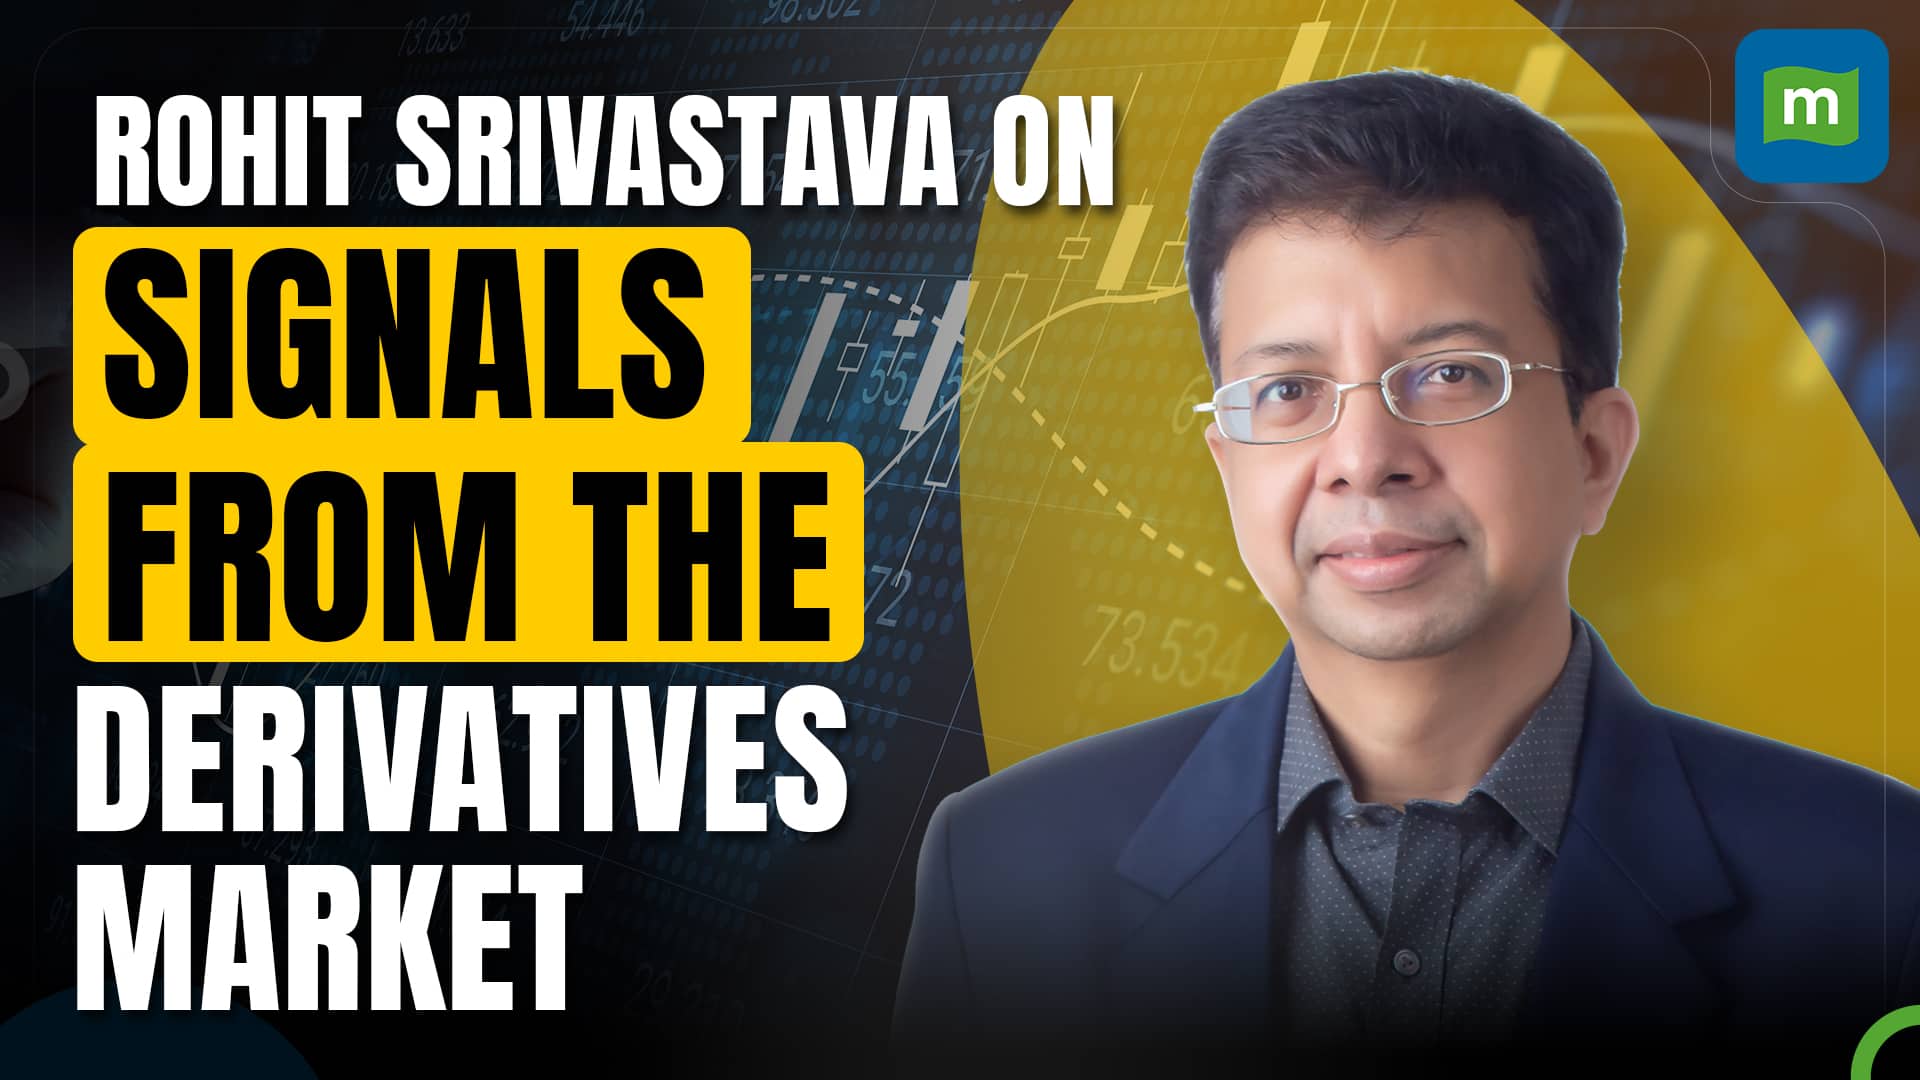 Rohit Srivastava on derivatives positioning, FIIs & DIIs, and impact of war on Indian markets